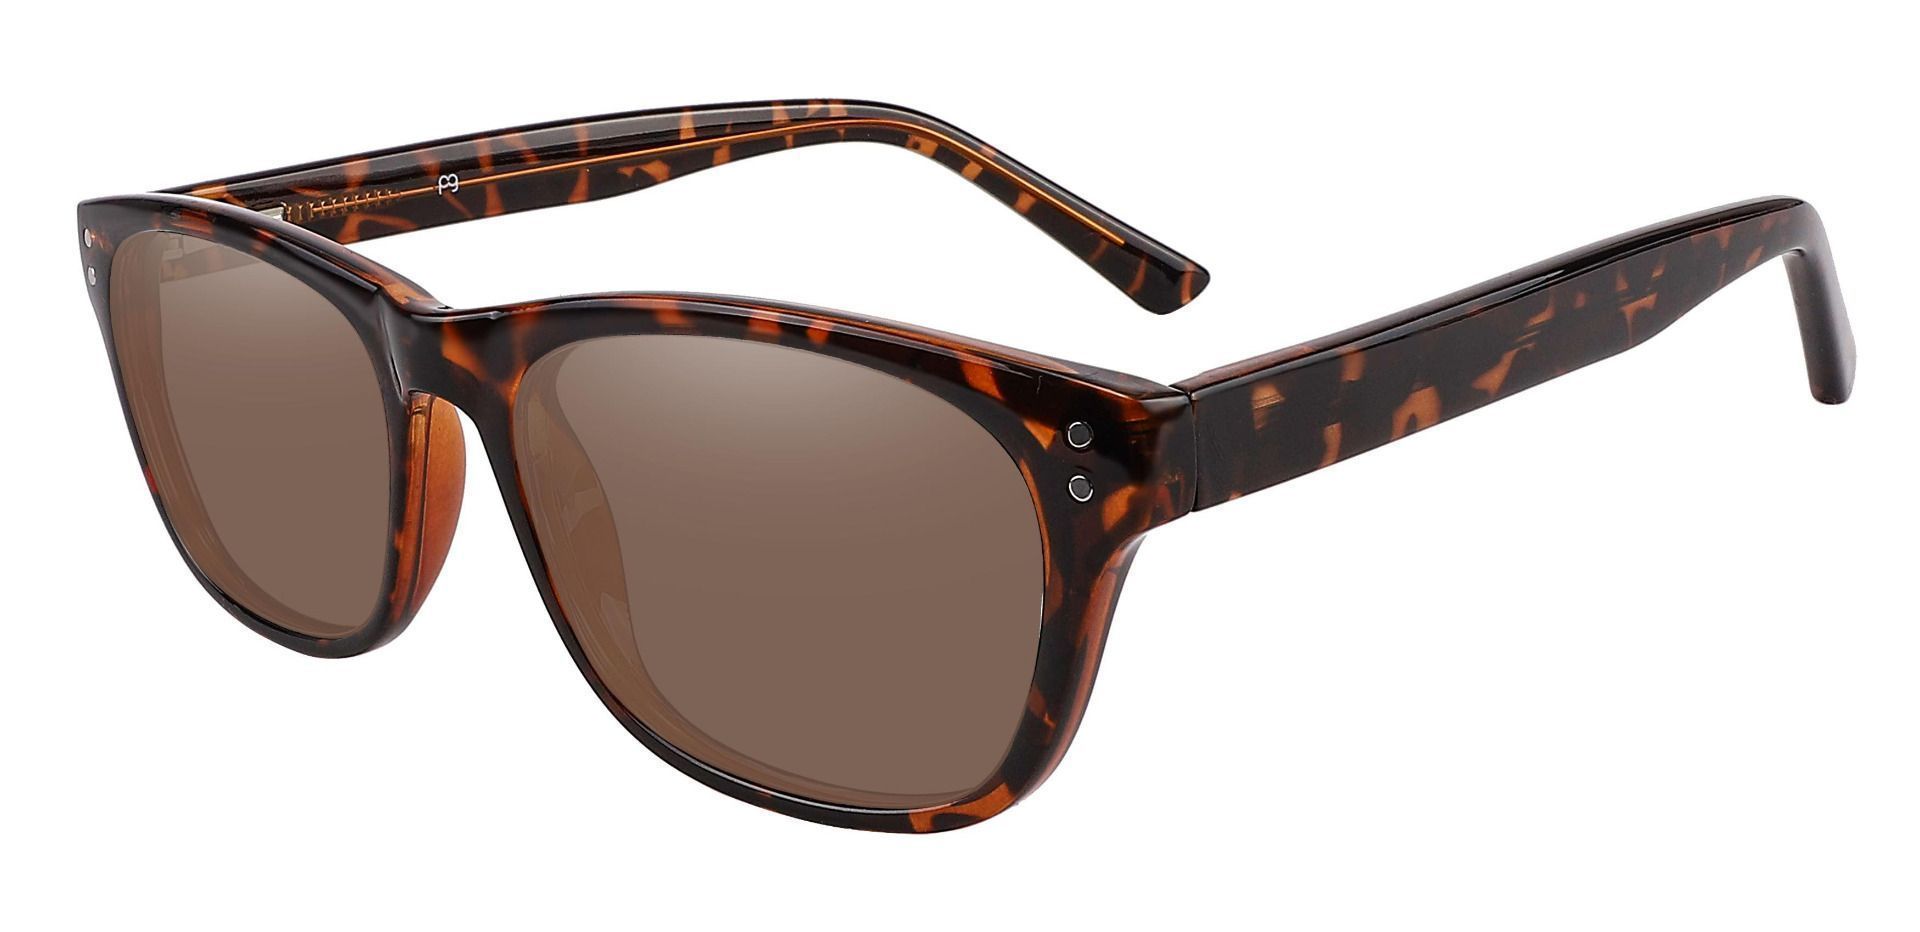 Citrus Rectangle Progressive Sunglasses - Tortoise Frame With Brown Lenses